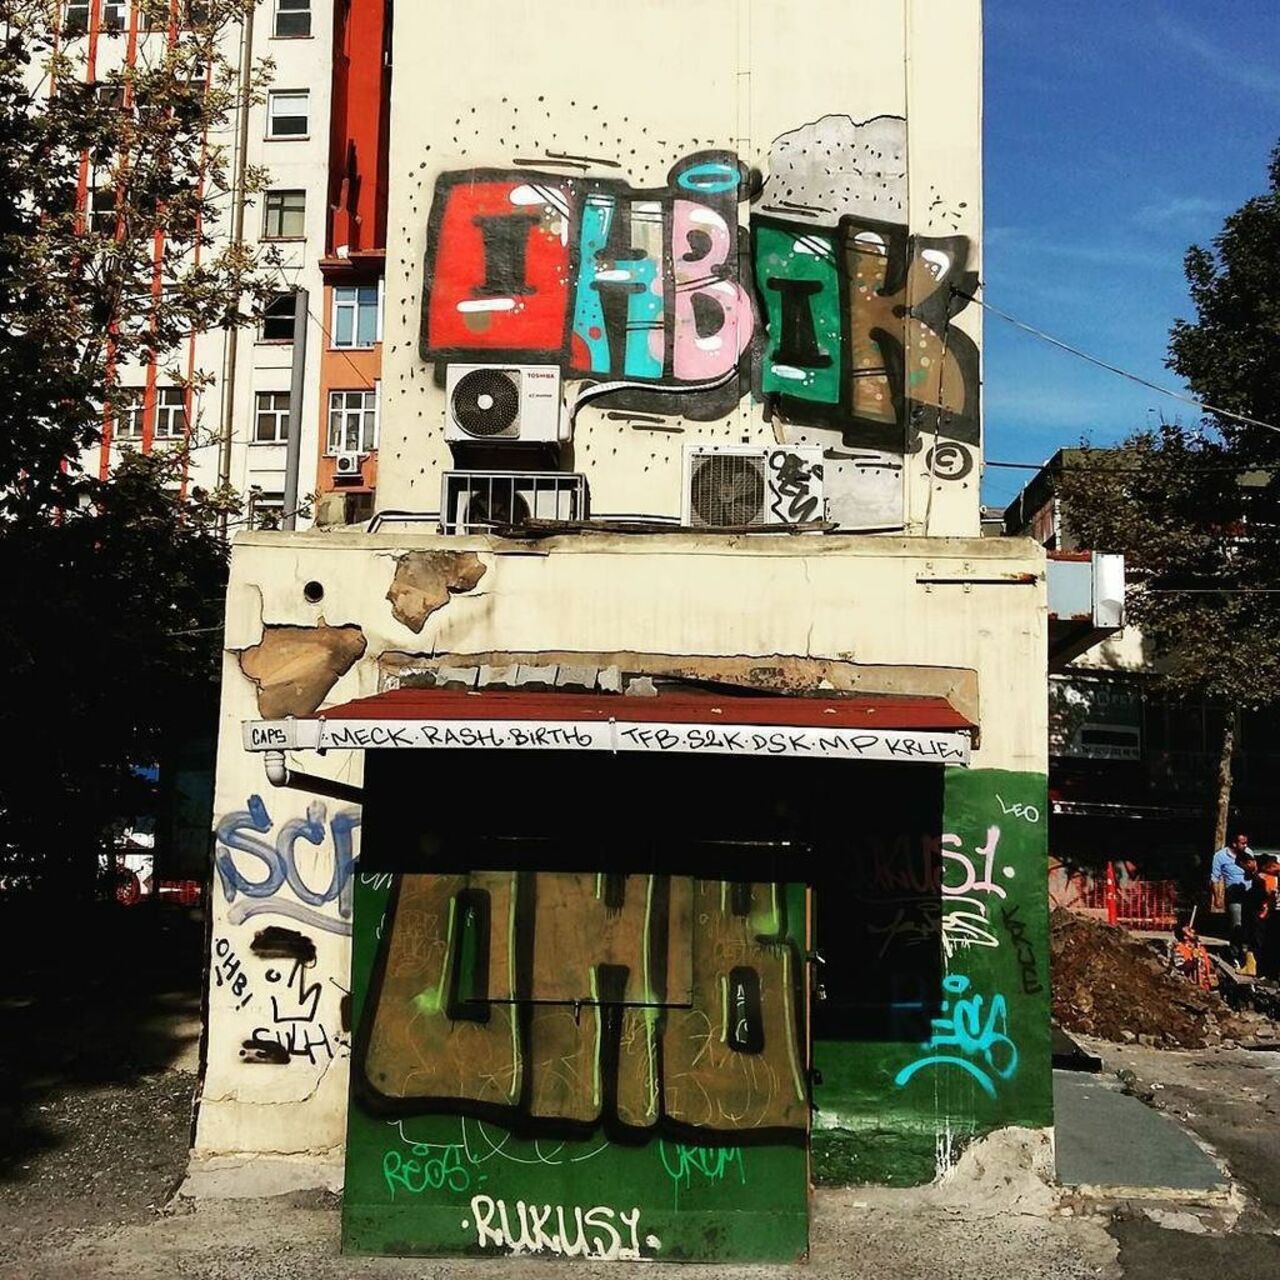 By #bokcrew @dsb_graff #dsb_graff @rsa_graffiti @streetawesome #streetart #urbanart #graffitiart #graffiti #instagr… https://t.co/rU5GeN8jpZ